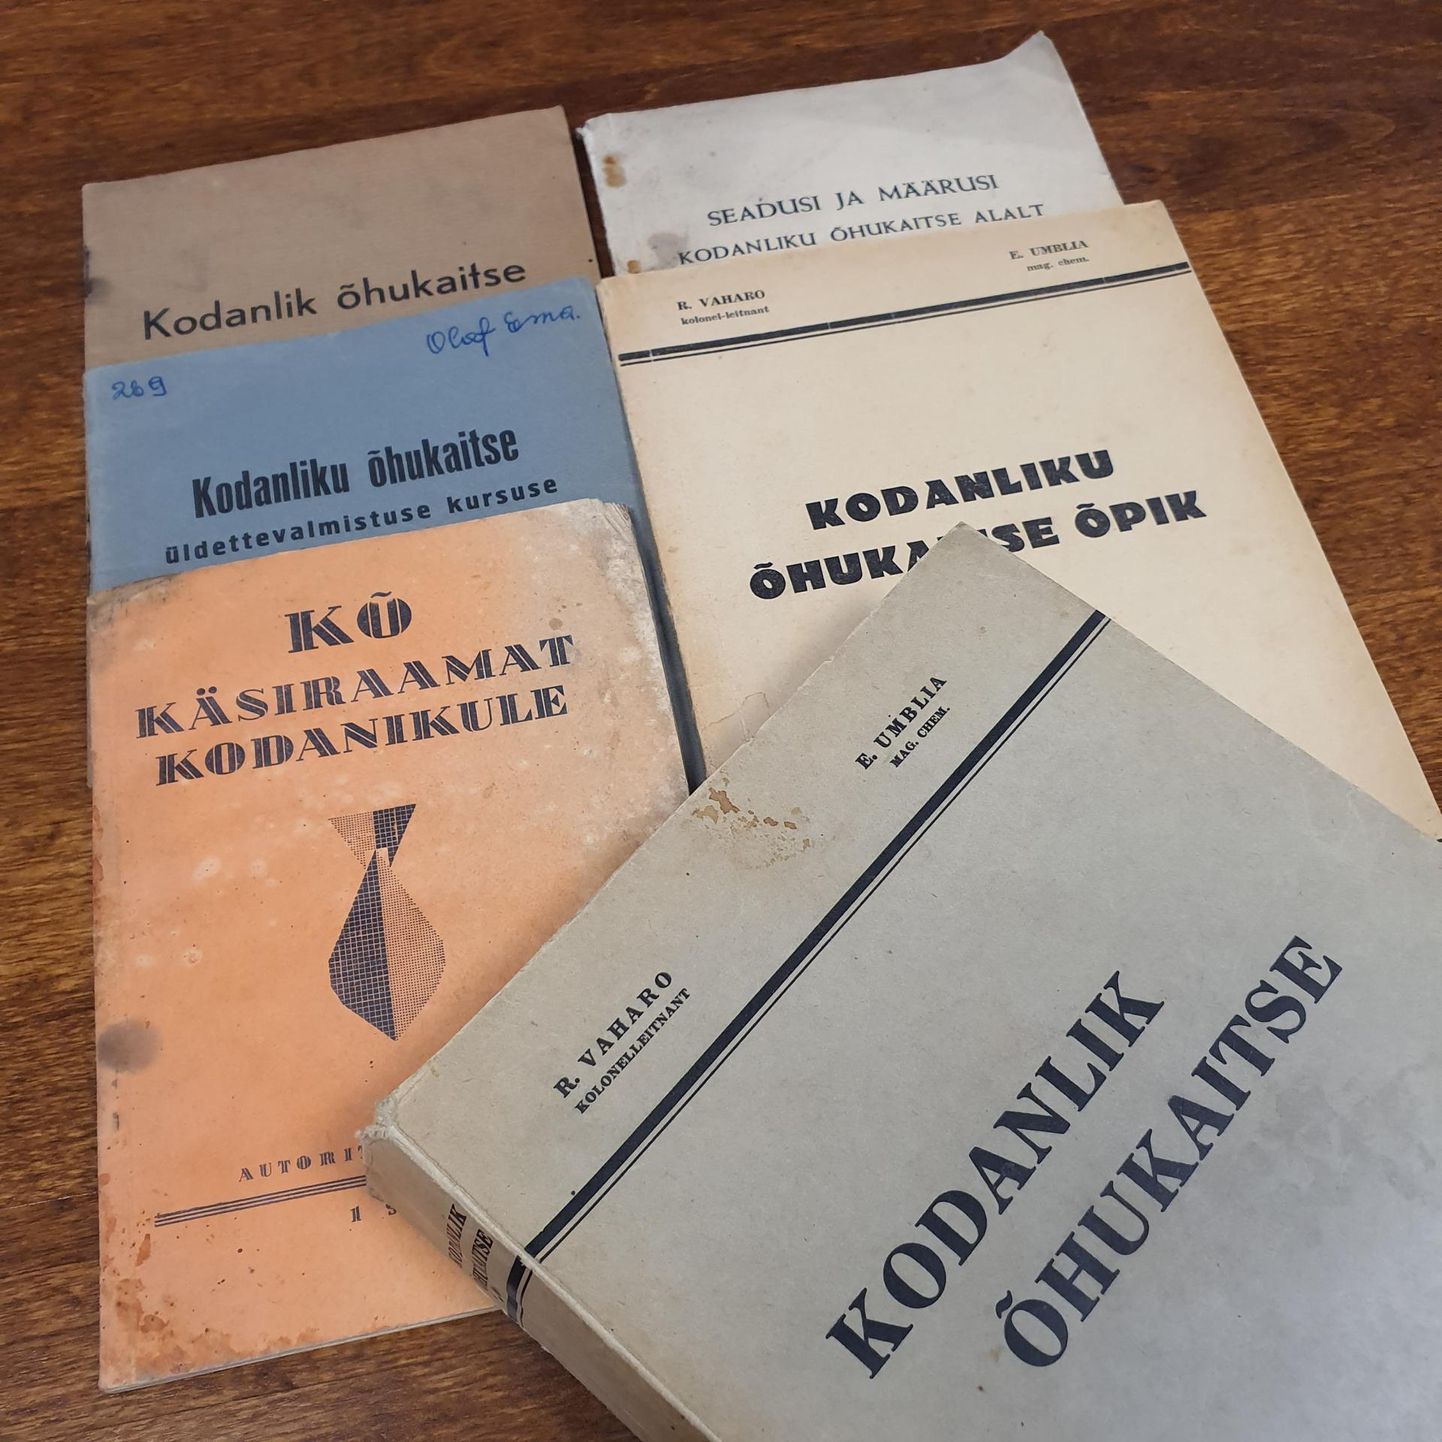 Õhukaitset ­käsitlenud trükised Olaf Esna kogust, sealhulgas 600-leheküljeline “Kodanlik õhukaitse” (1939).